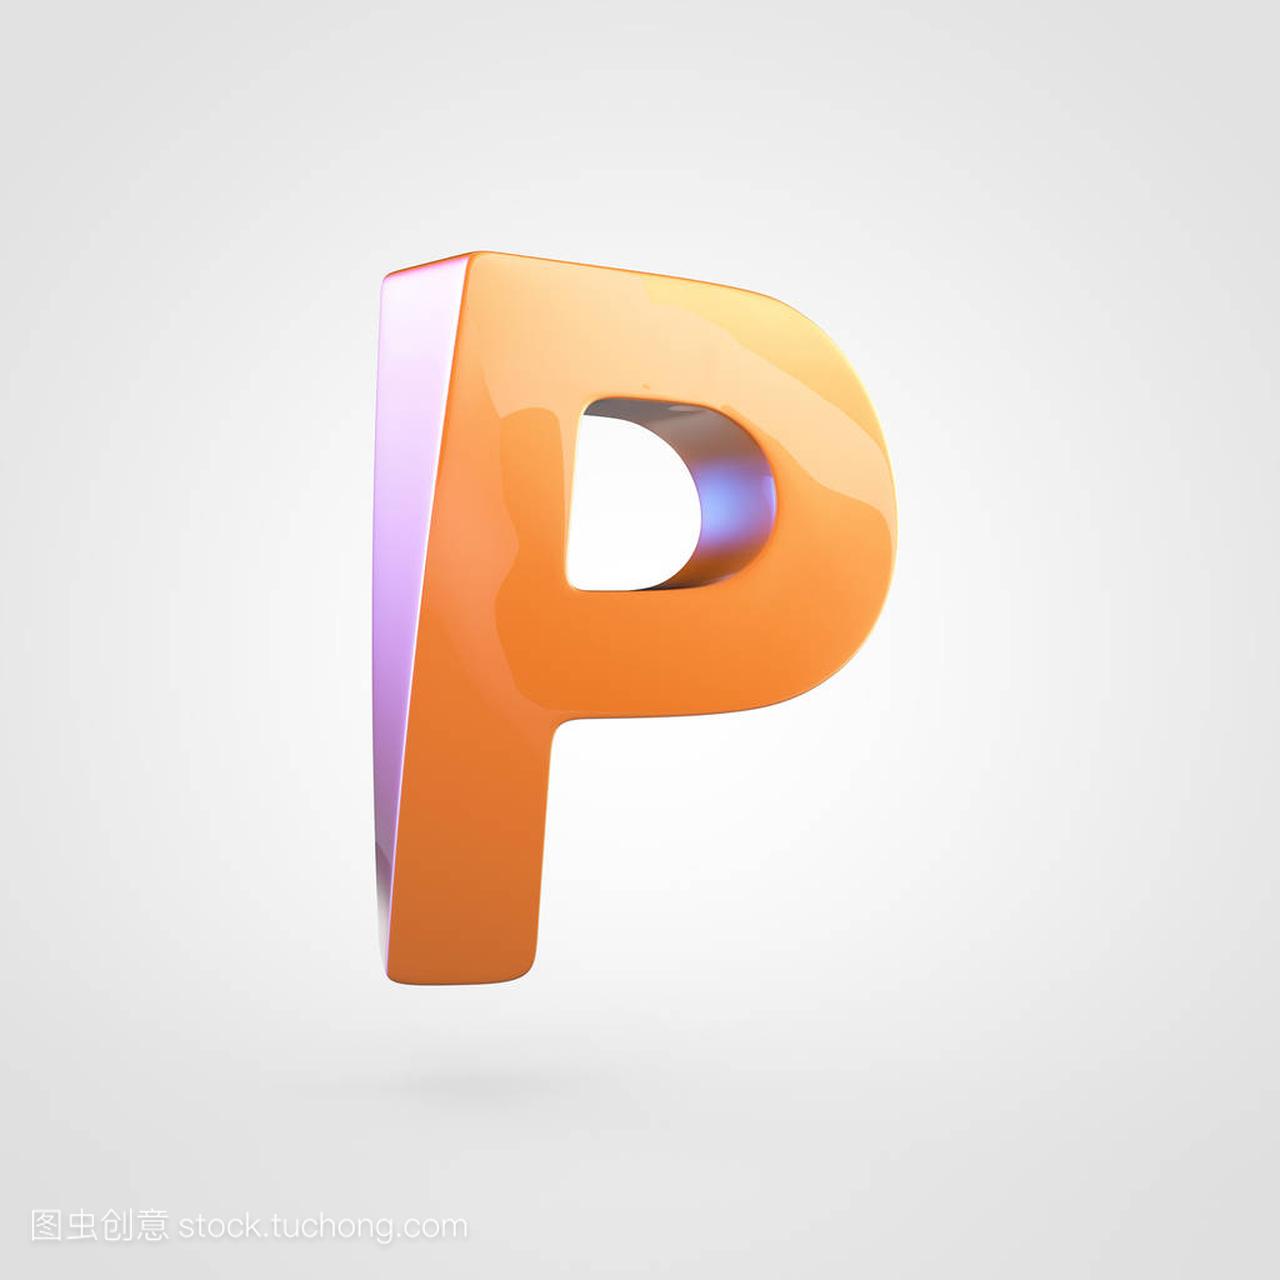 橙色大写字母 P